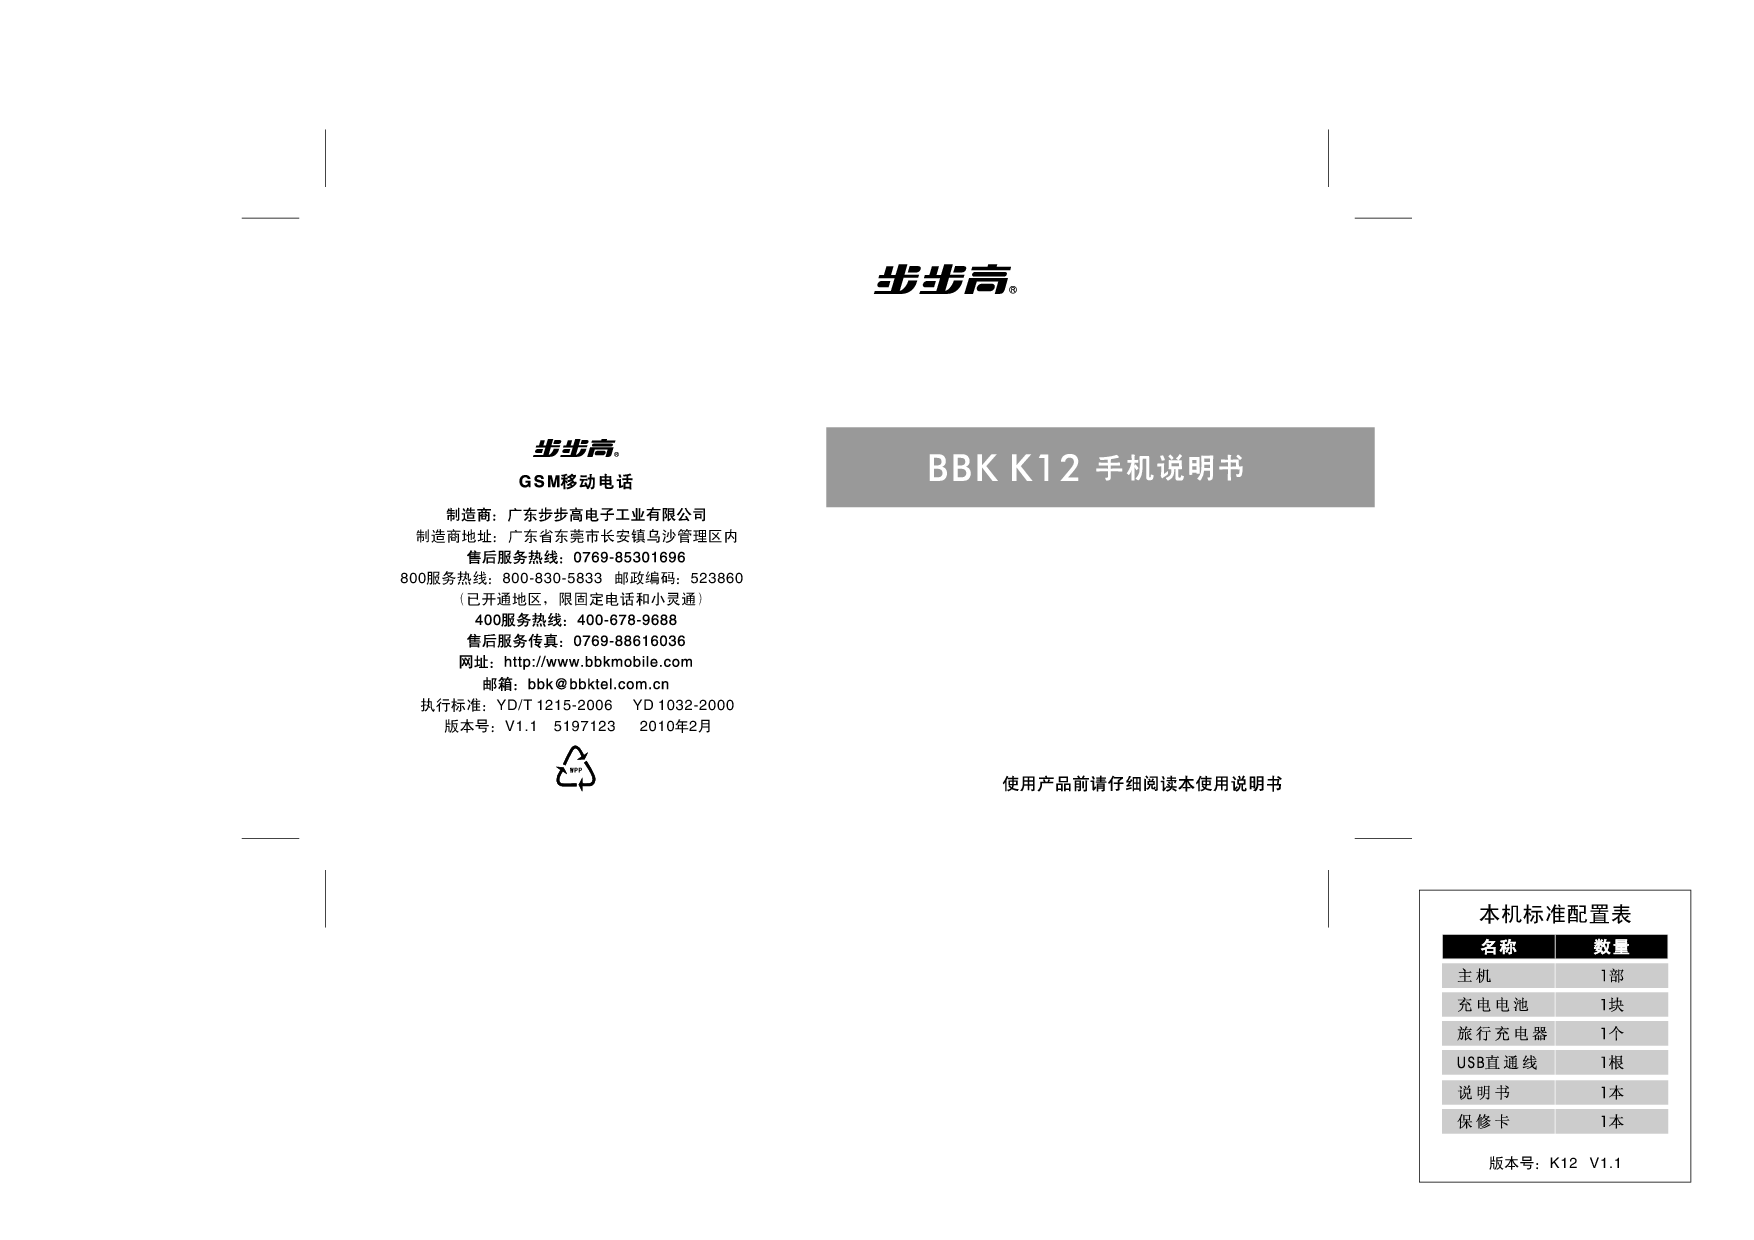 步步高 BBK K12 使用说明书 封面